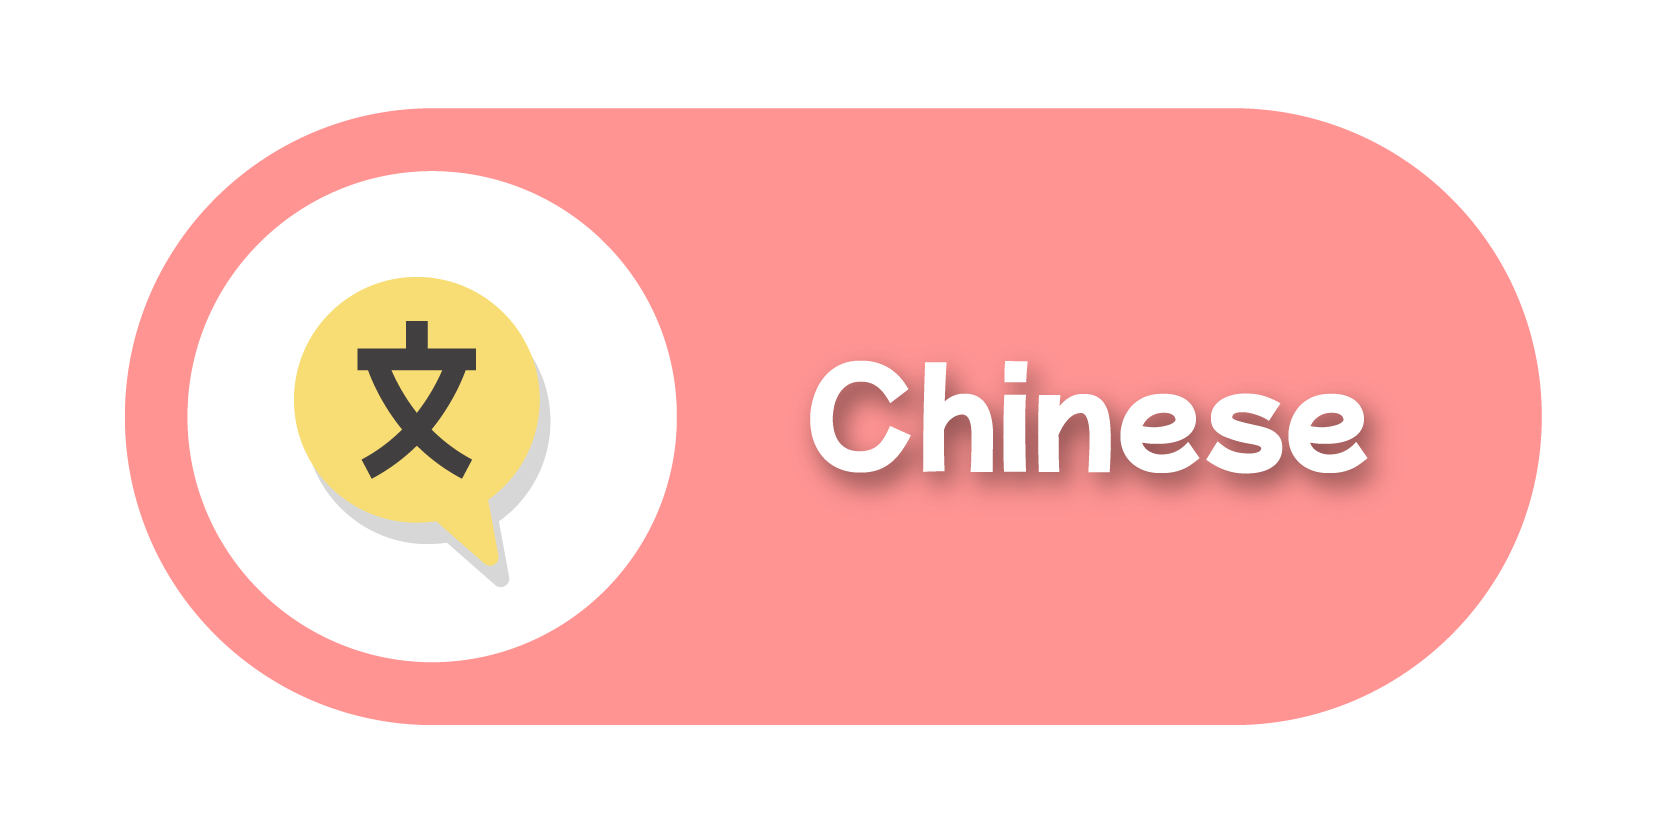 Chinese